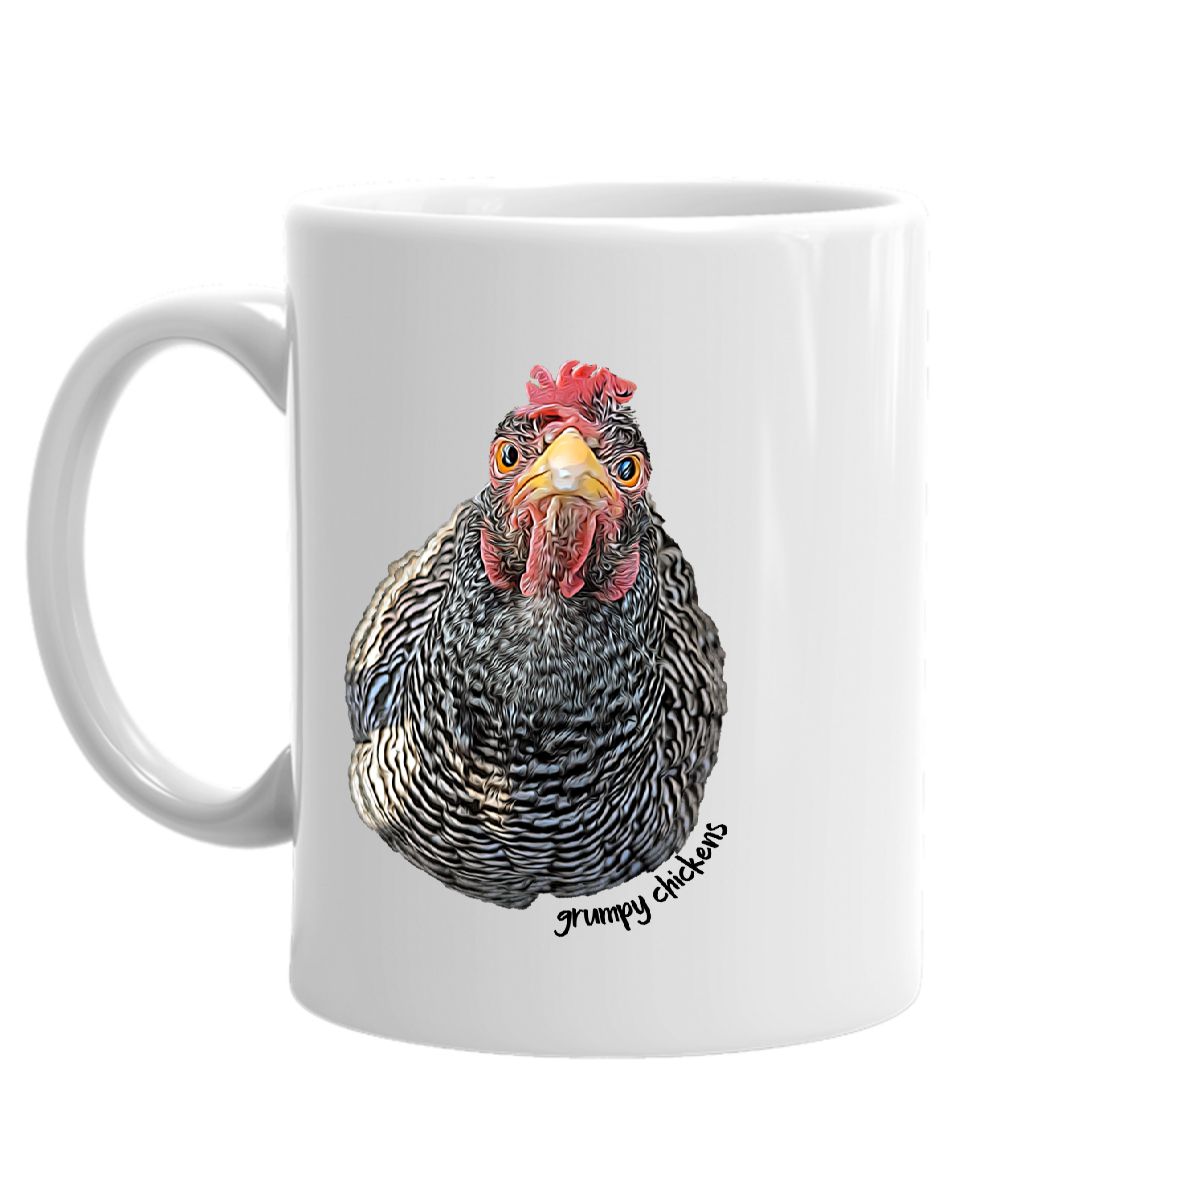 Grumpy Chickens Mug